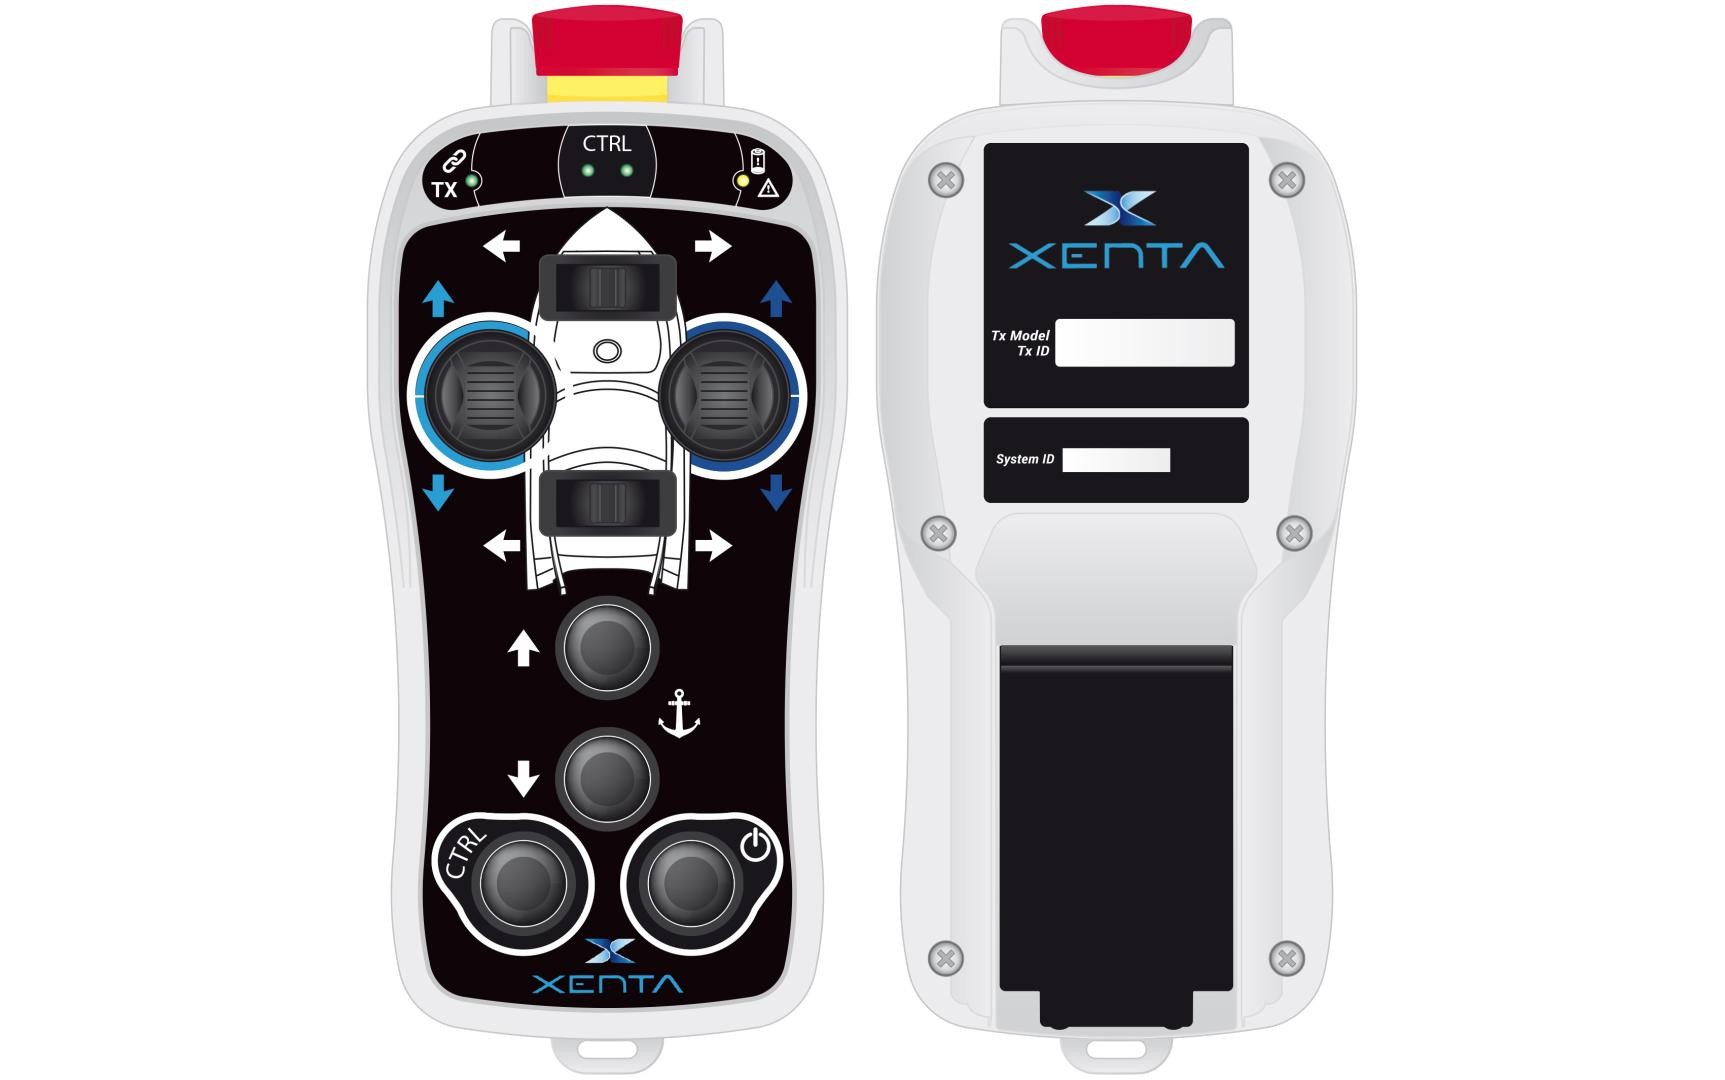 Nuovo telecomando XENTA per i propri sistemi di guida integrati